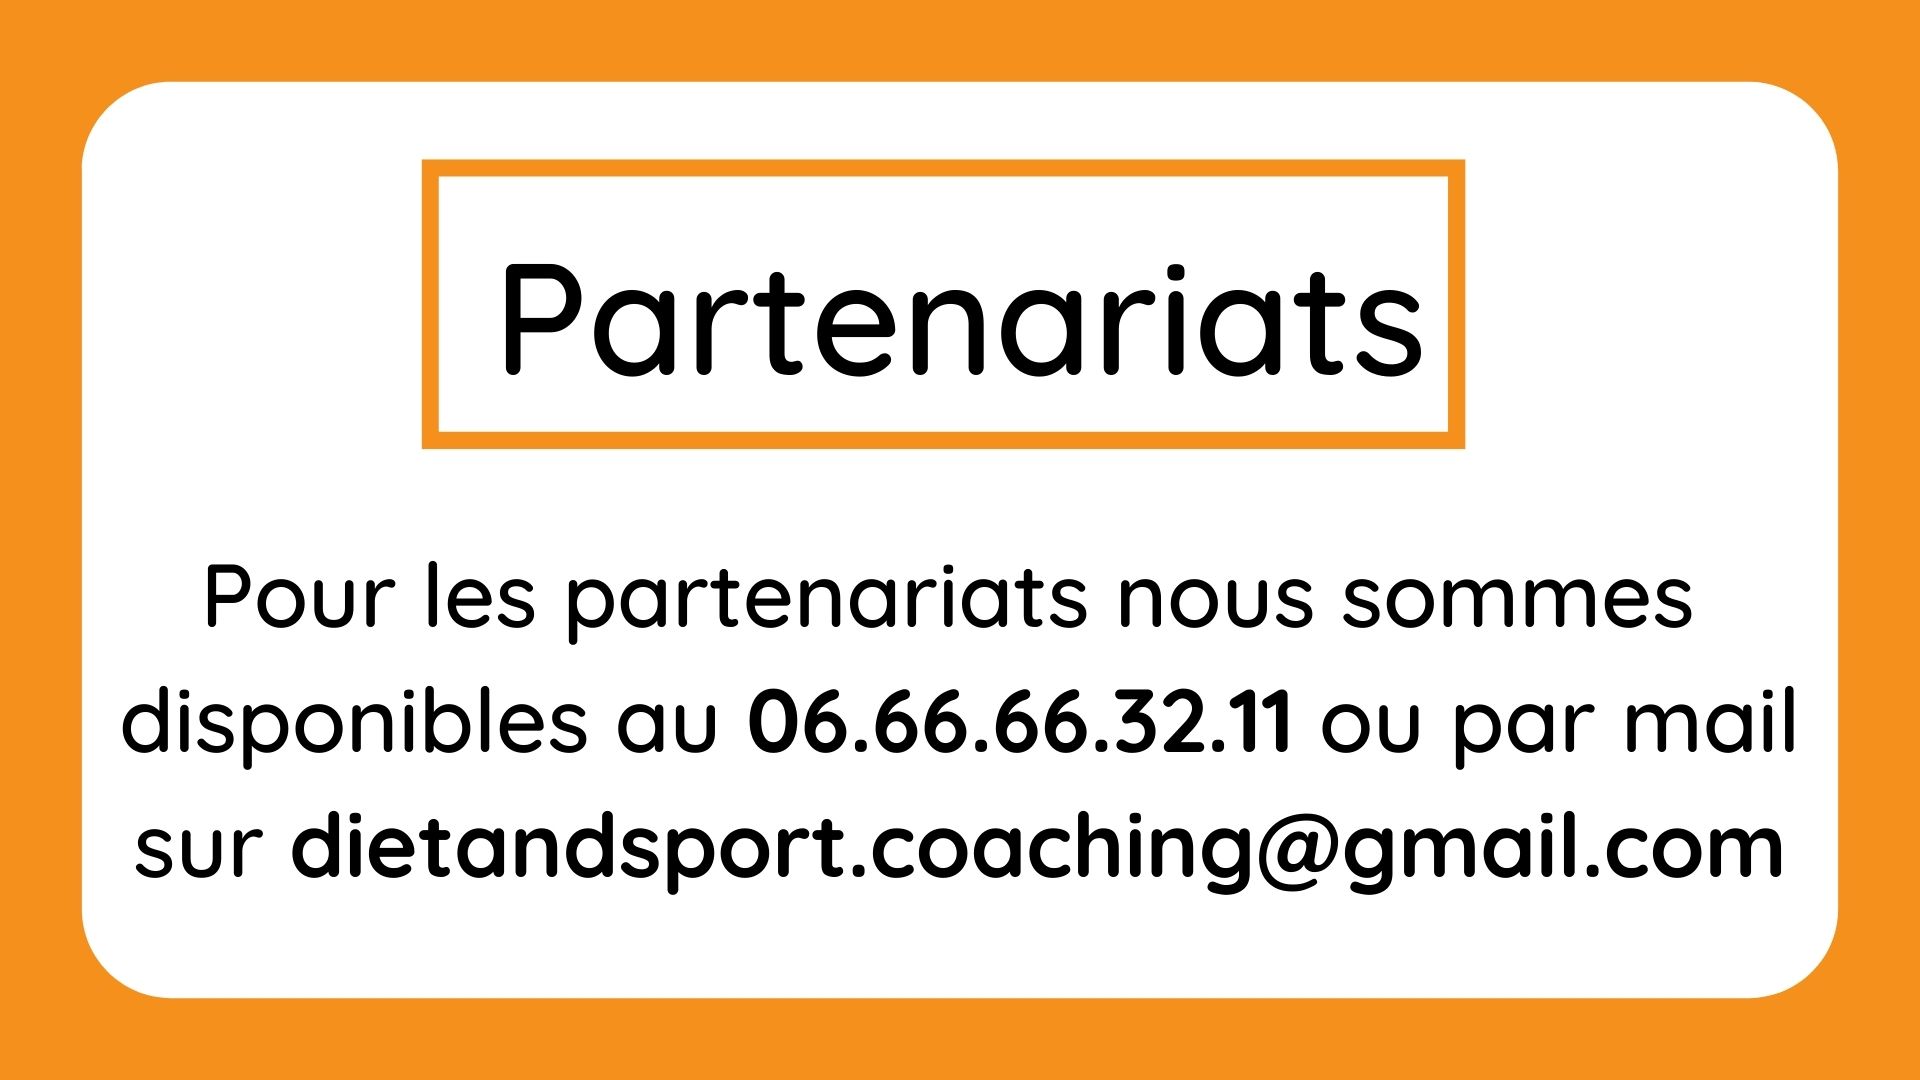 Pour les partenariats nous sommes disponibles au 06.66.66.32.11 ou par dietandsport.coaching@gmail.com (1)